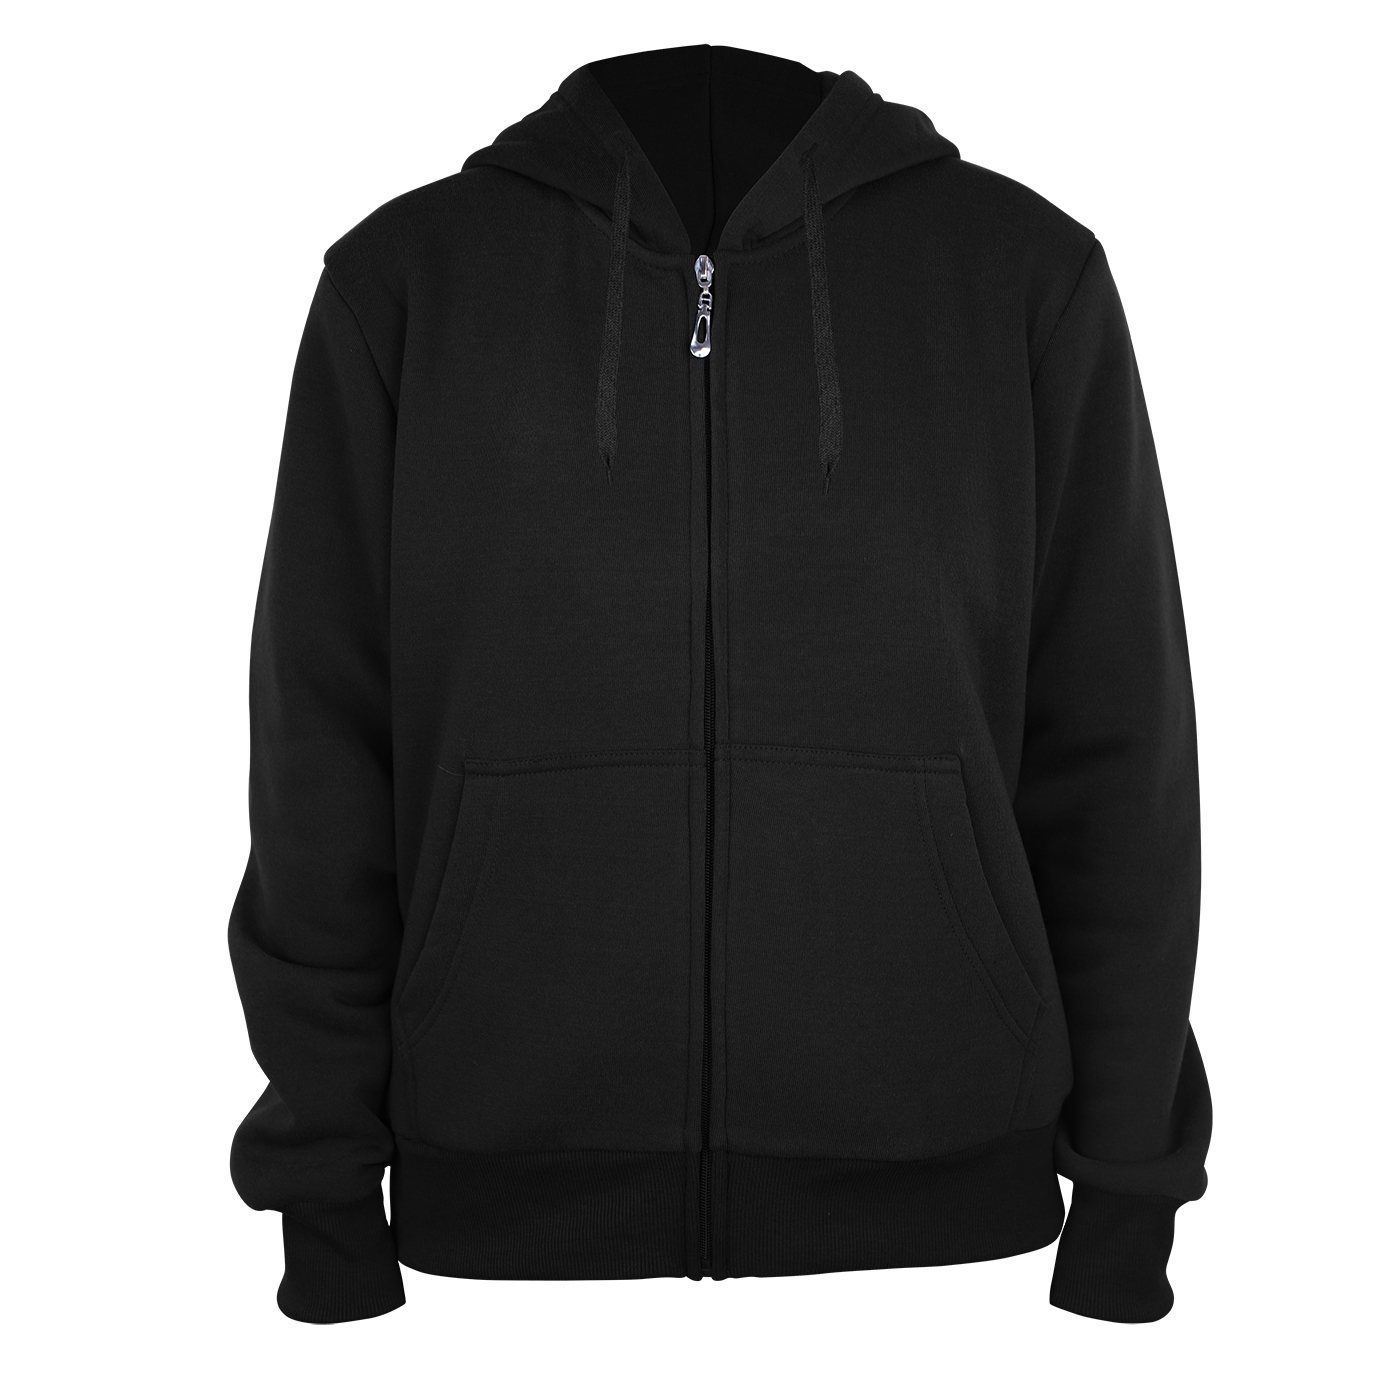 Wholesale Women's Full Zip Fleece Hoodie Sweatshirts - S-XXL, Black